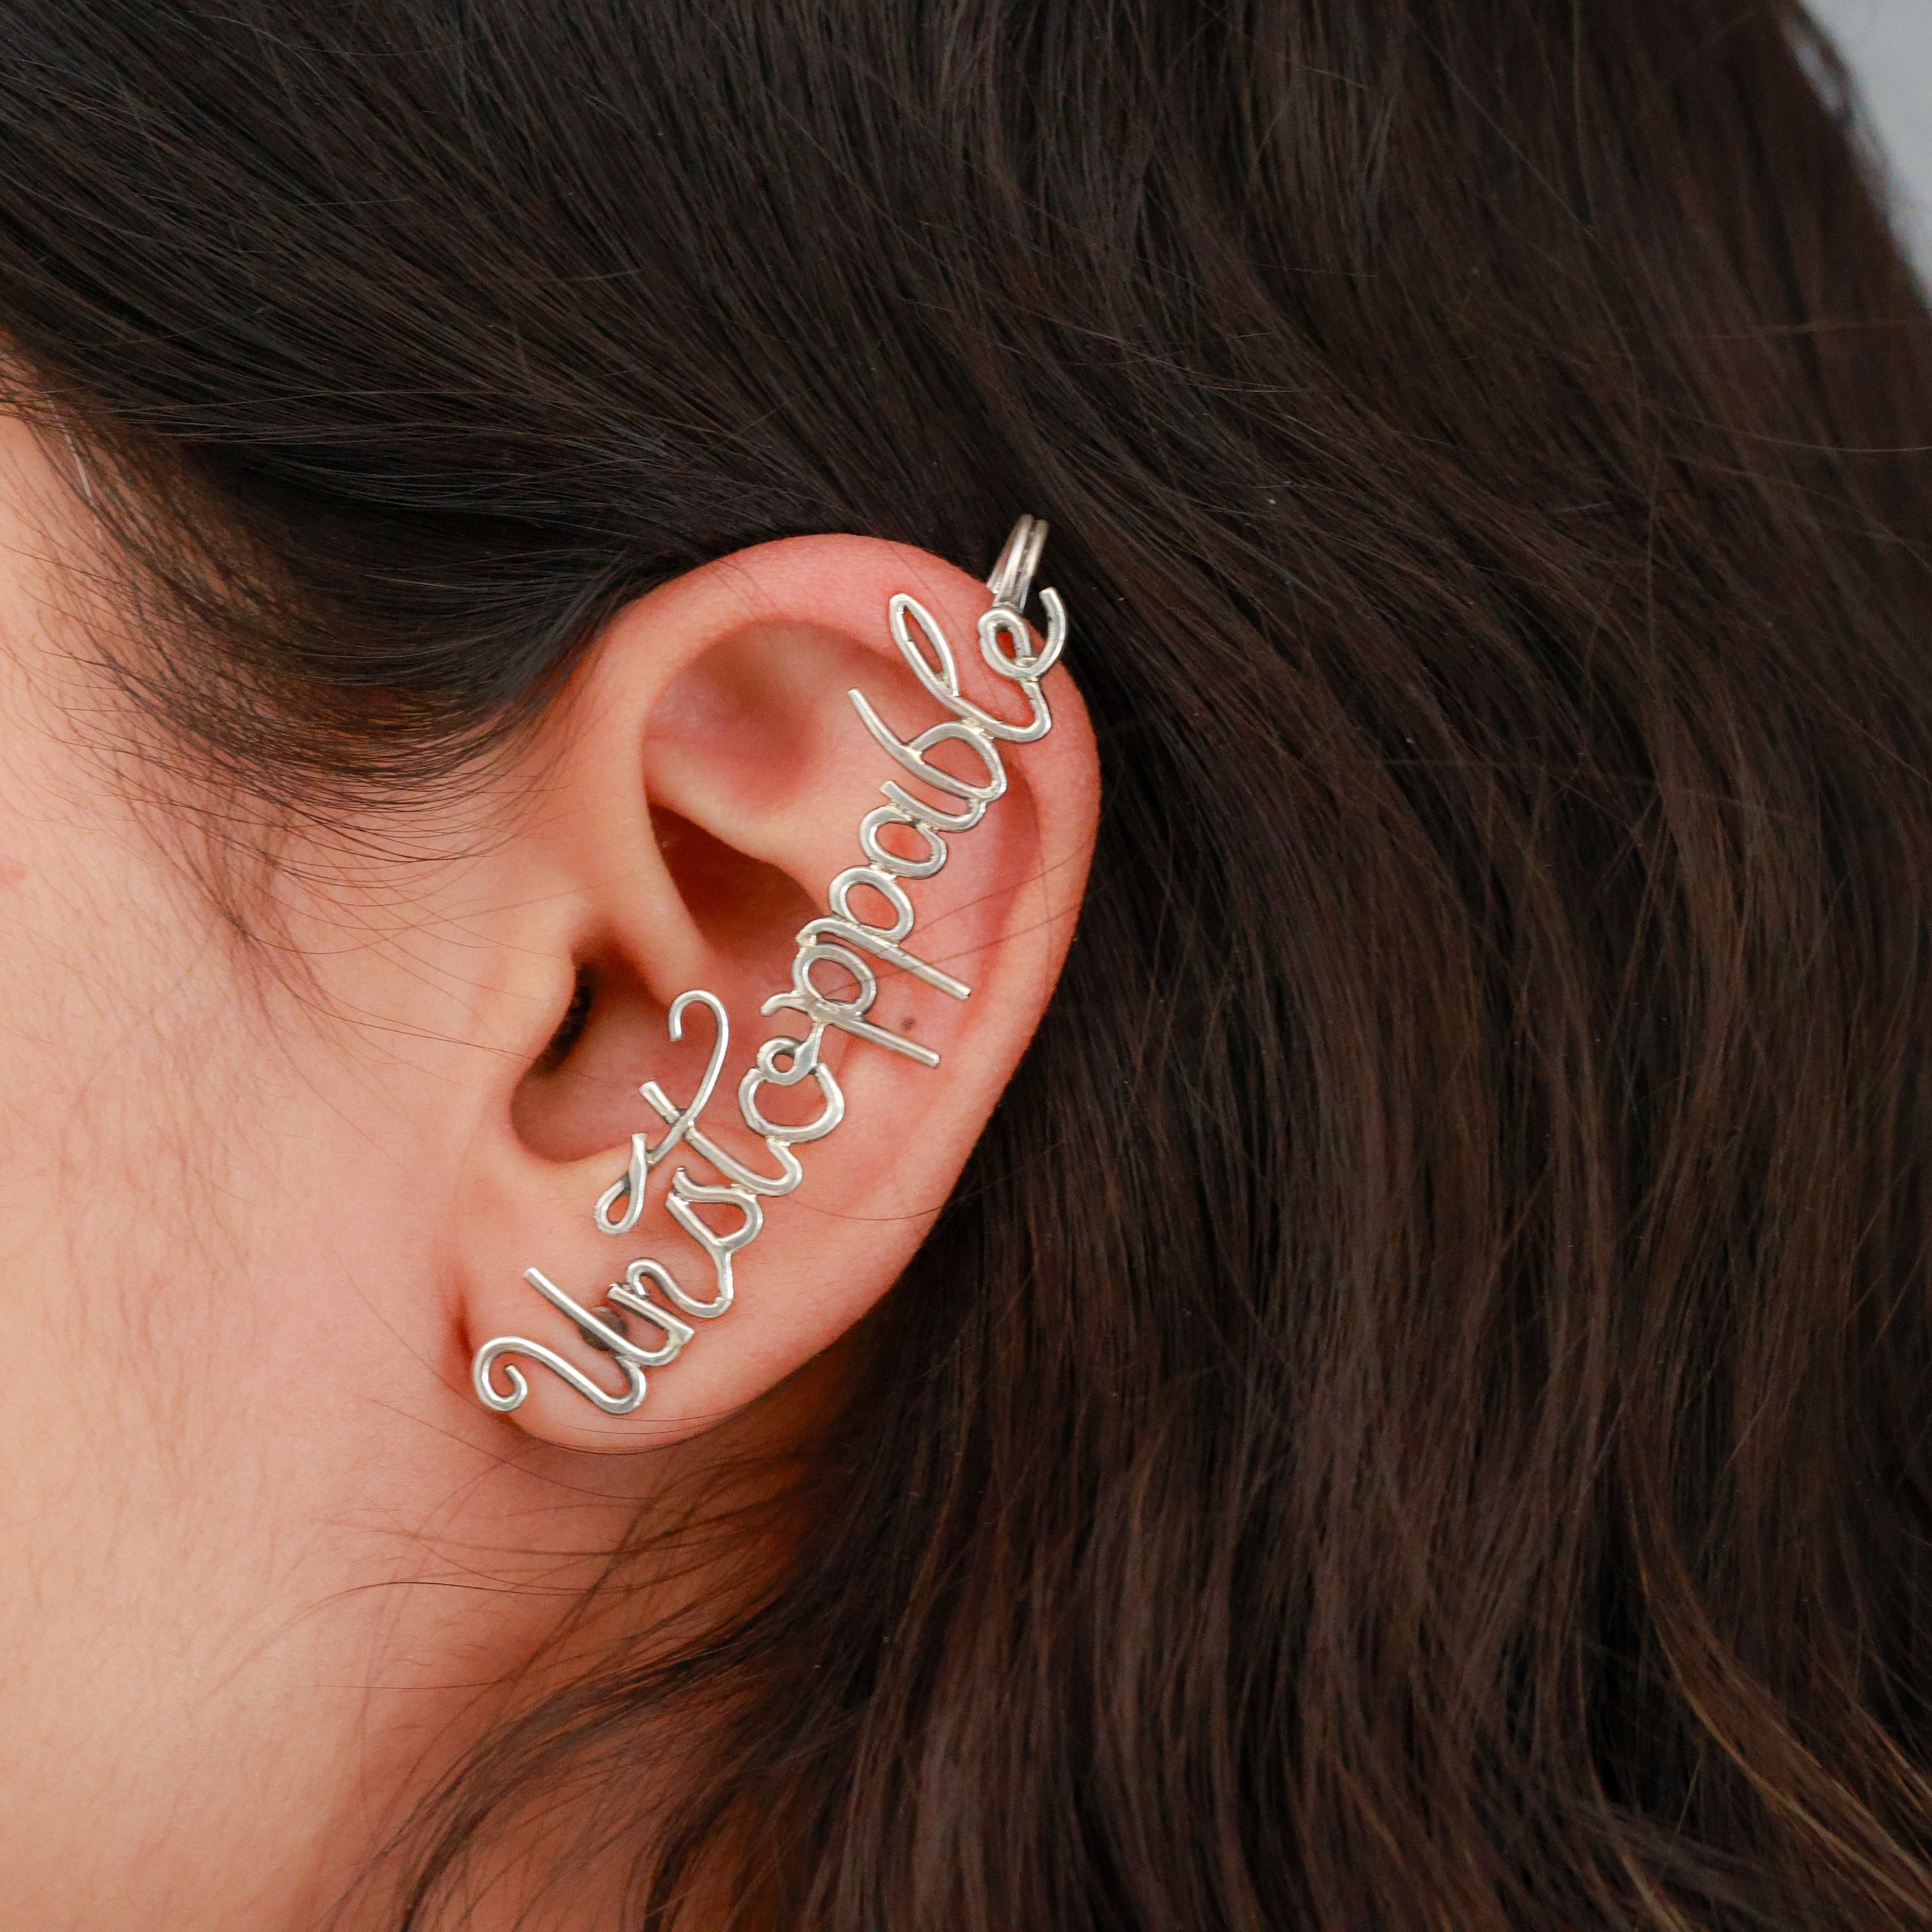 Ear Cuff Silver Double Hoop Ear Wrap Gold Ear Cuffs Fake Piercing Ear Stack  Jewelry Accessory gift Summer Jewelry